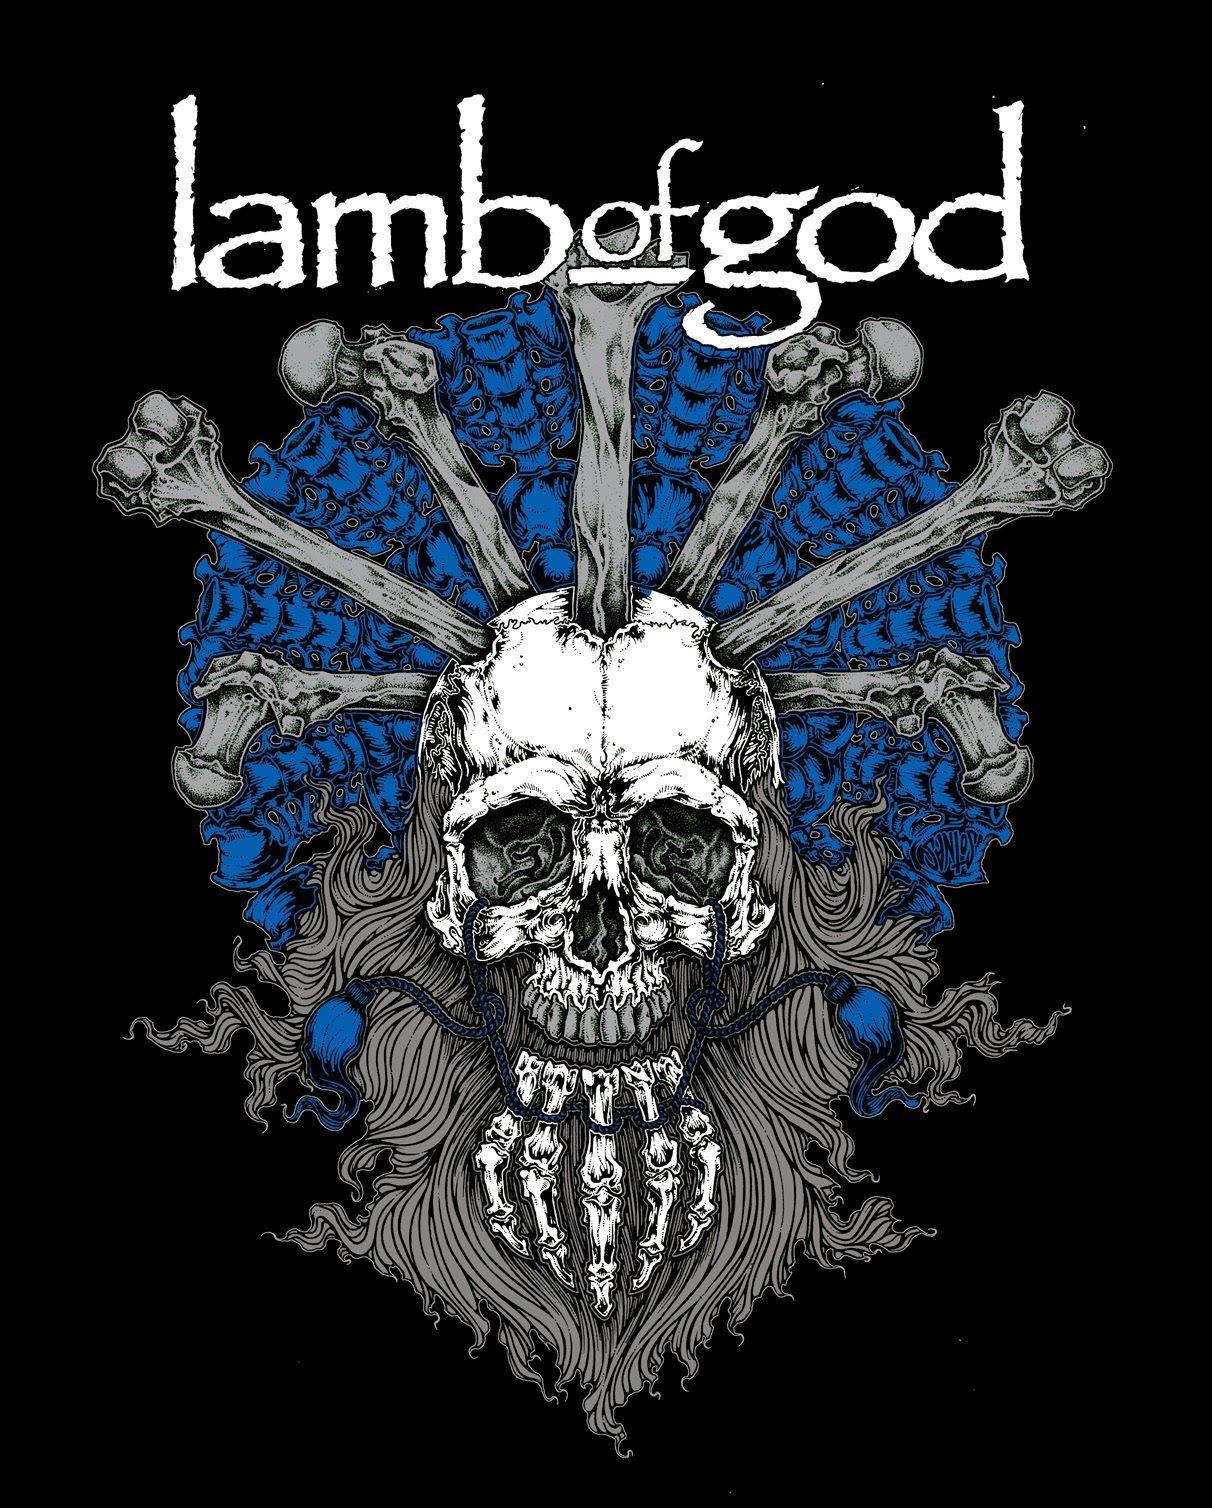 lamb of god wrath wallpaper